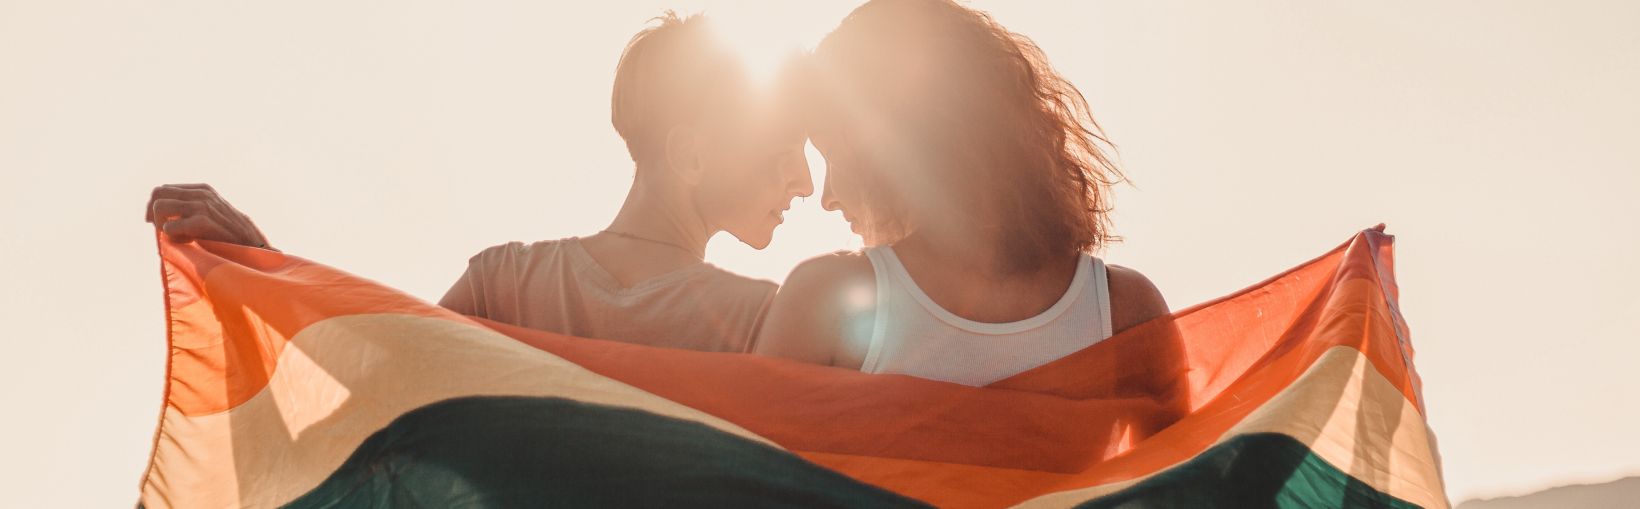 Skaists, jauns lesbiešu pāris mīloši apskaujas un tur varavīksnes karogu un zīmi par vienlīdzīgām tiesībām LGBT kopienai,